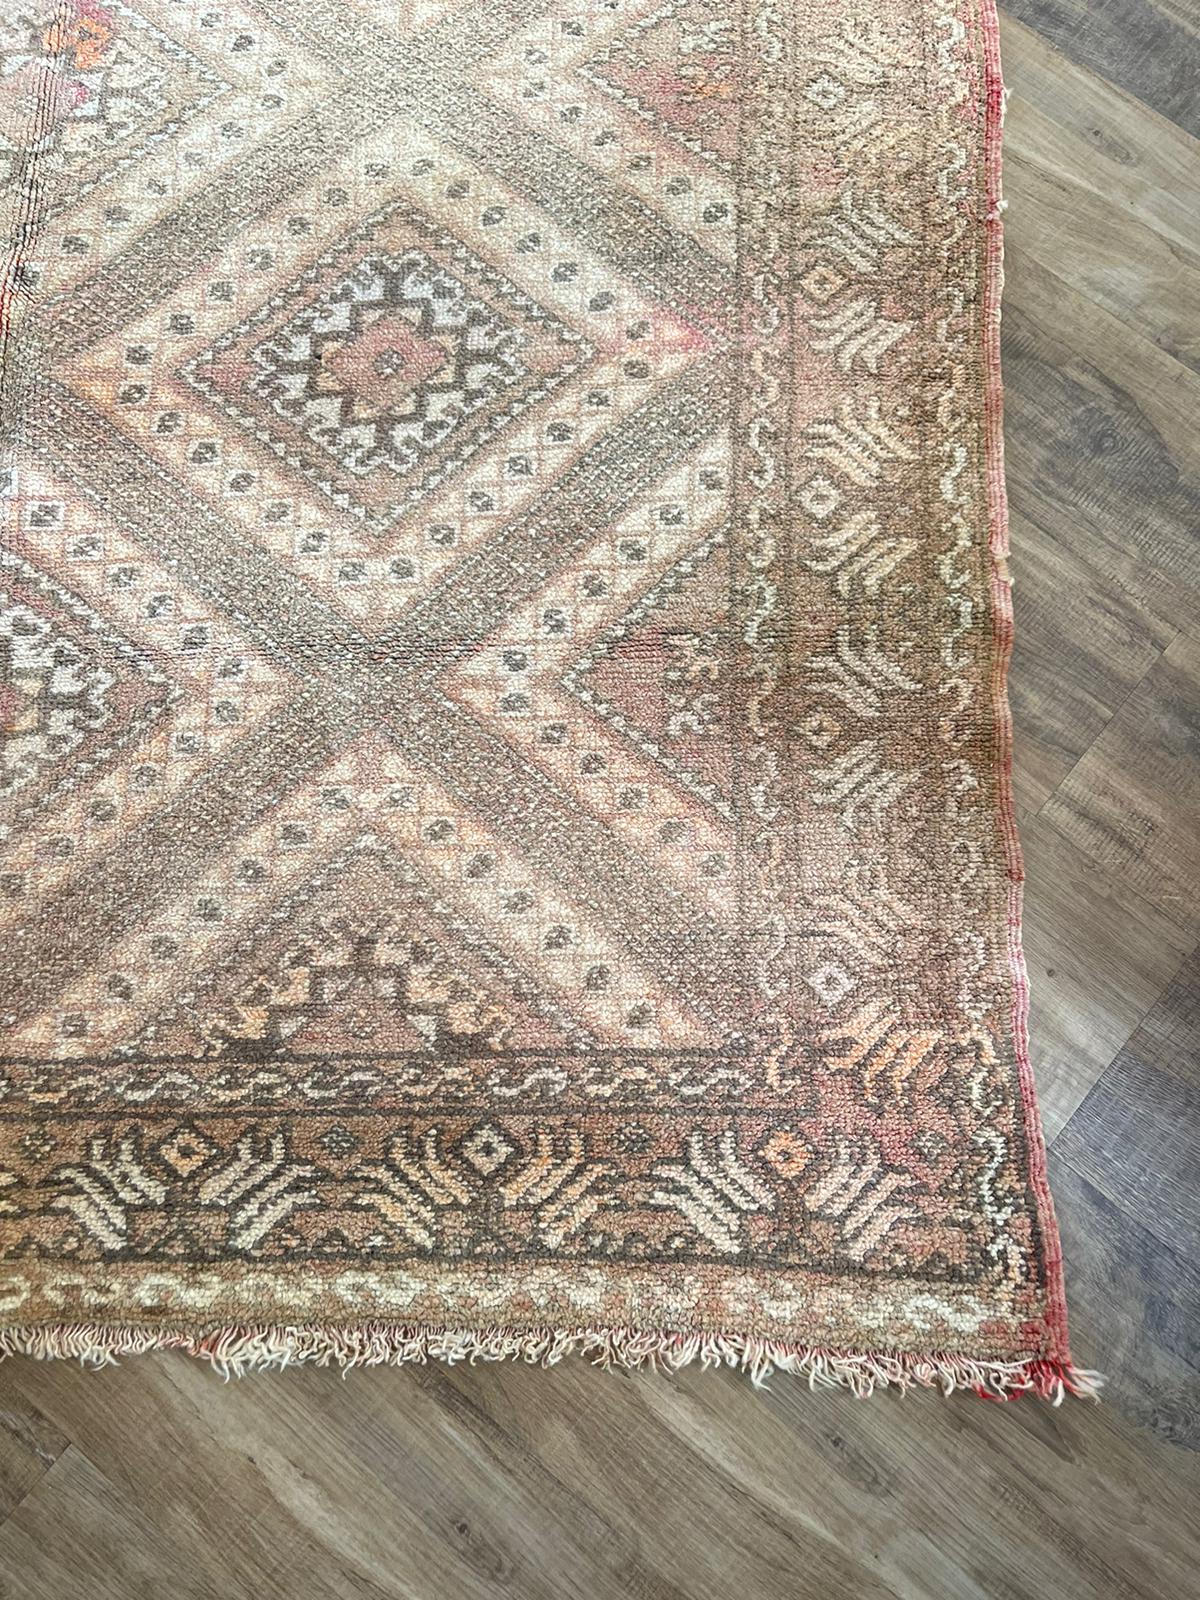 Vintage rug-296 by 152cm -sultan